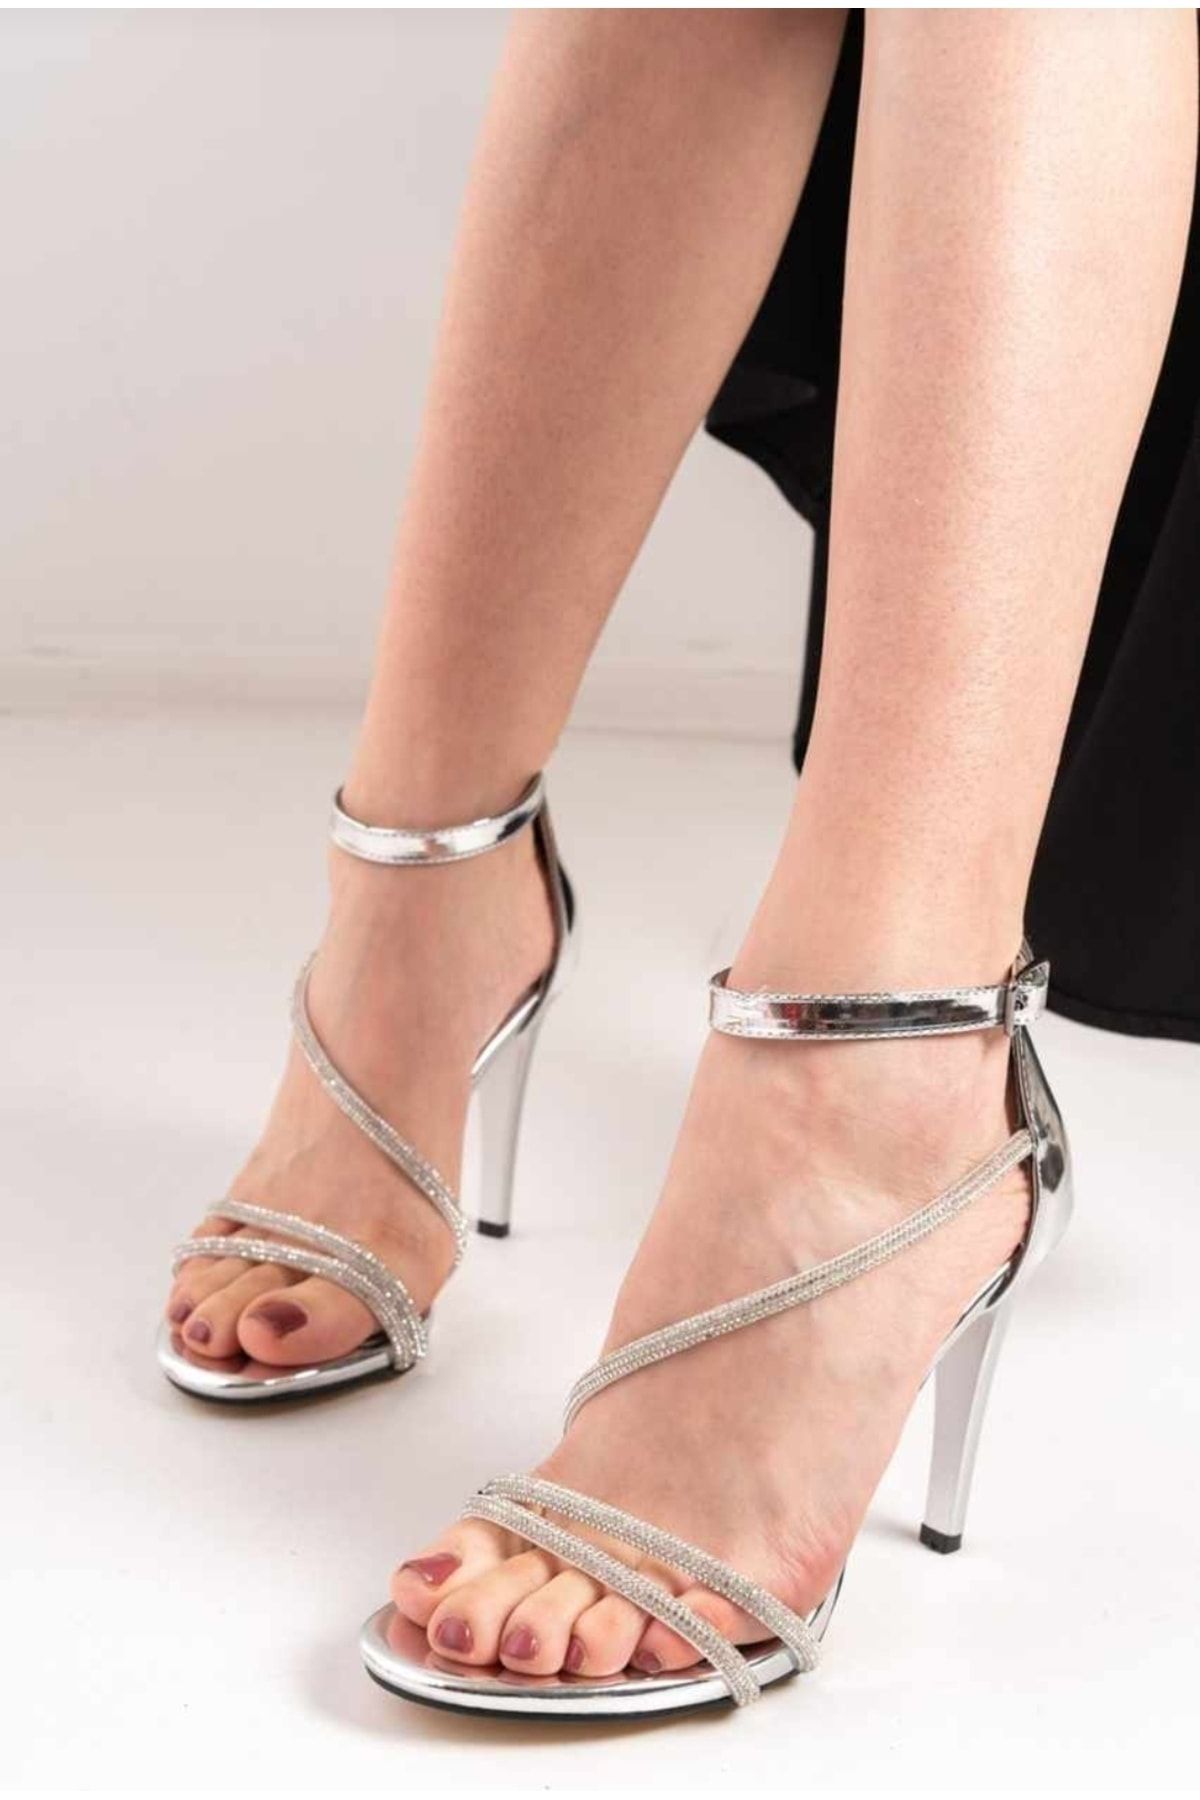 Afilli Kadın Gümüş Taşlı İnce Yüksek Topuklu İnce Tek Bantlı Açık Bağcıklı Abiye Sandalet Ayakkabı